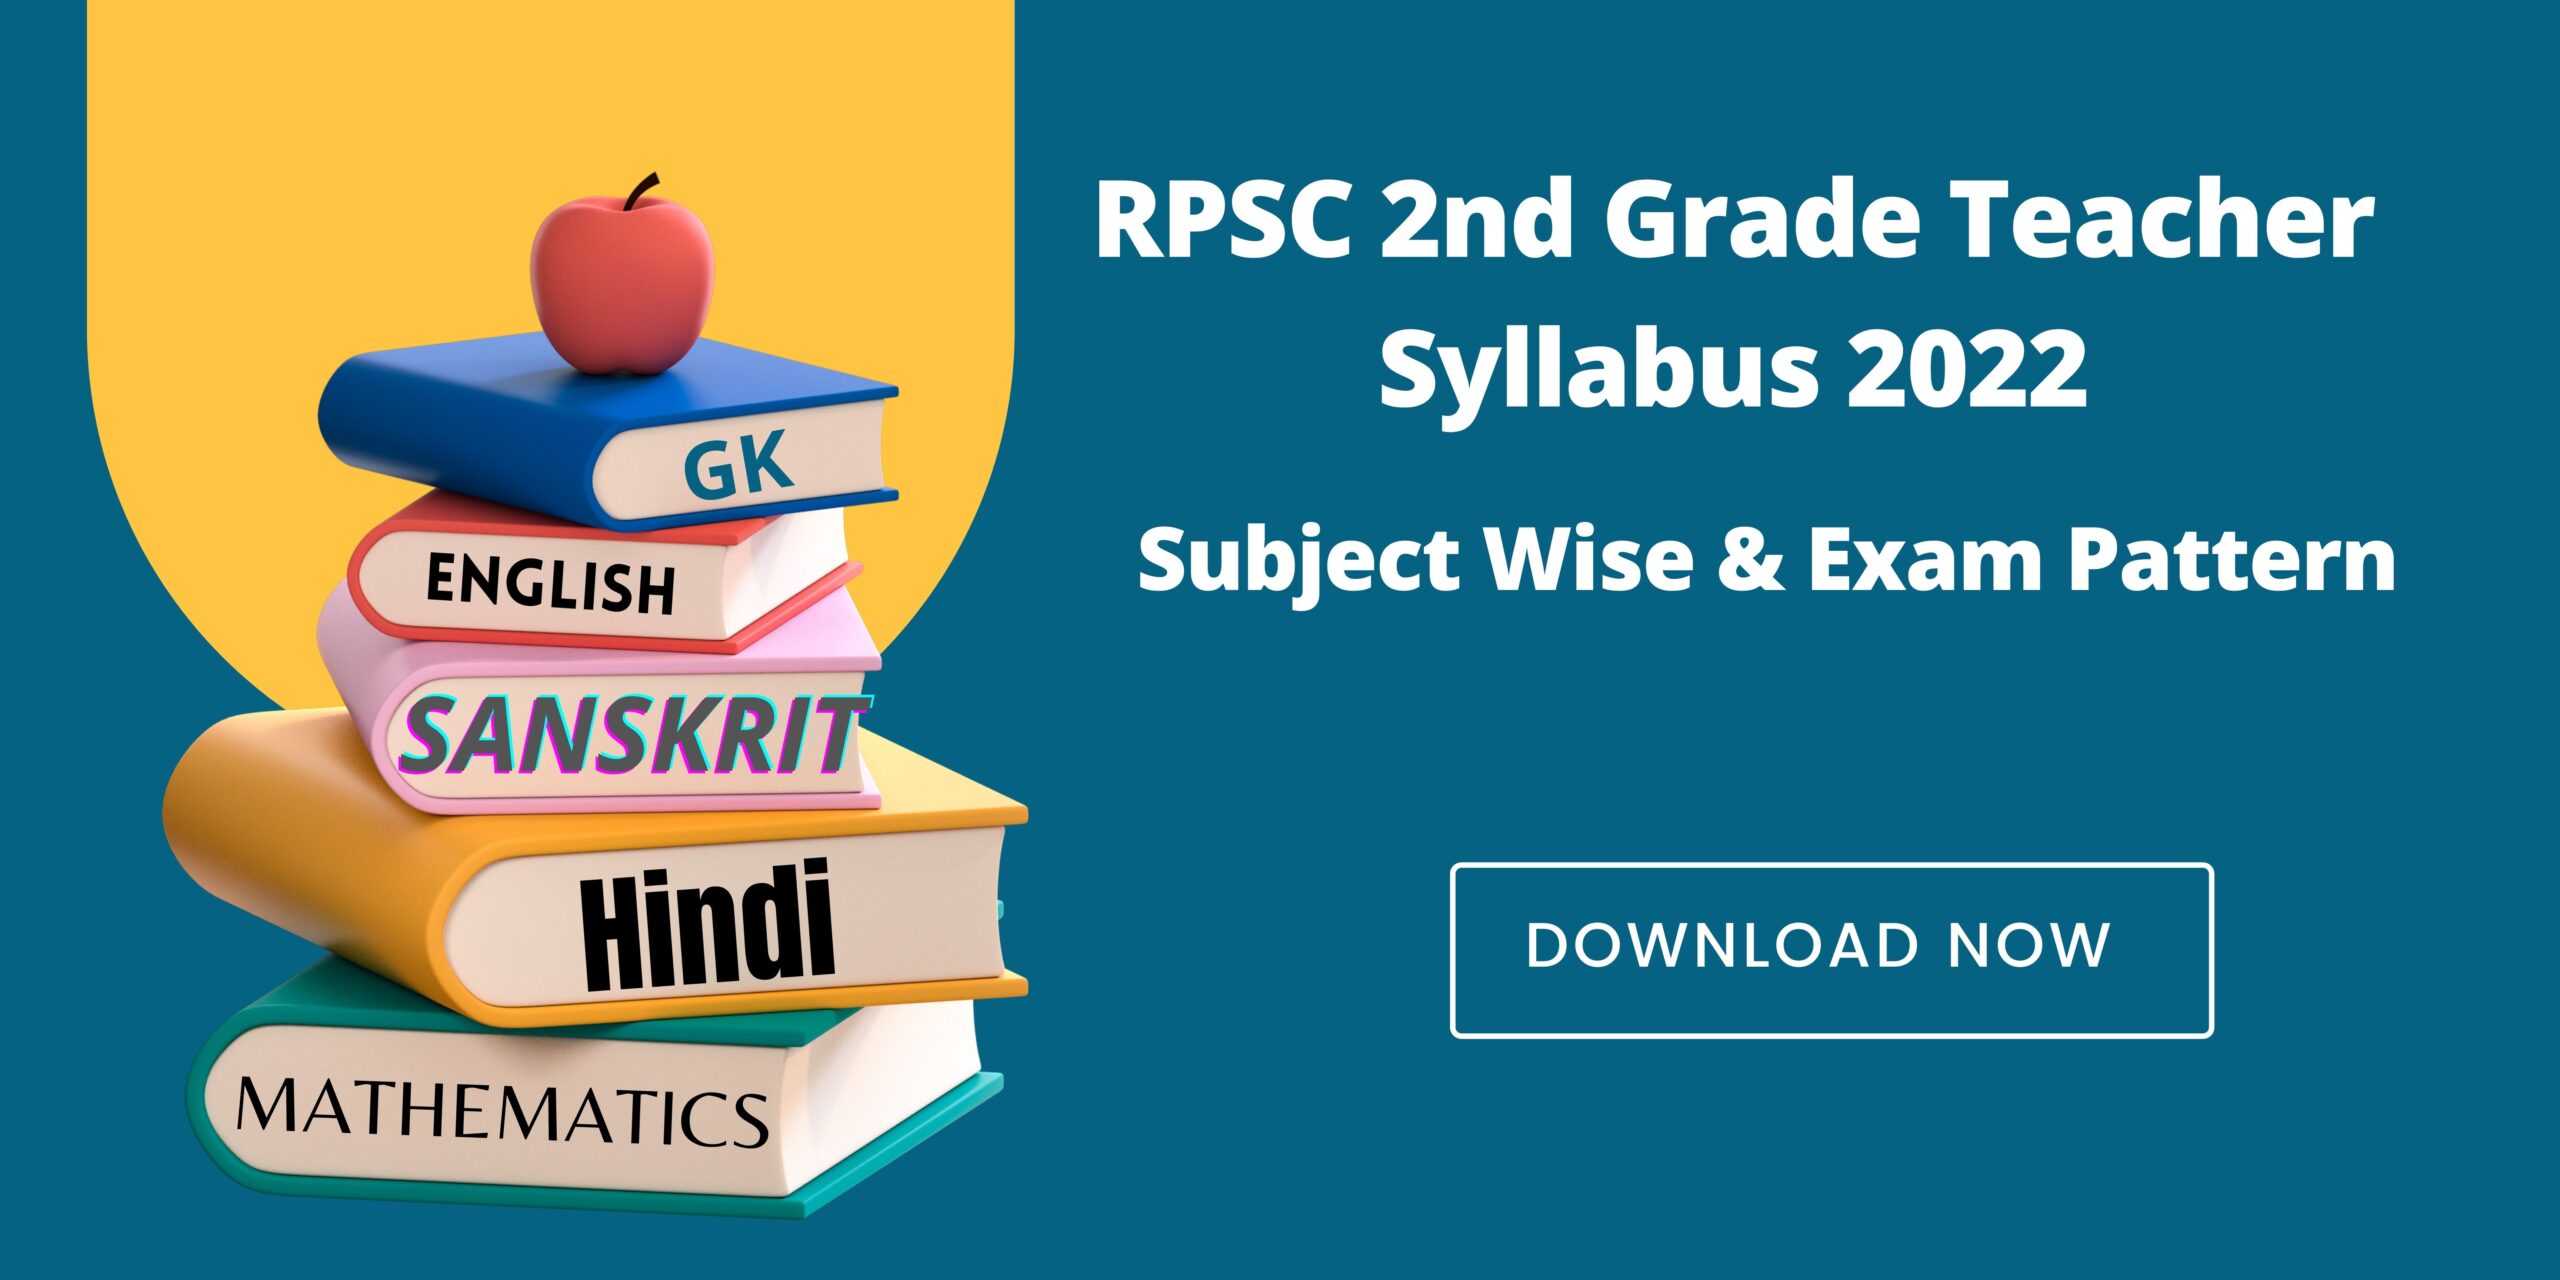 RPSC 2nd Grade Teacher Syllabus 2022